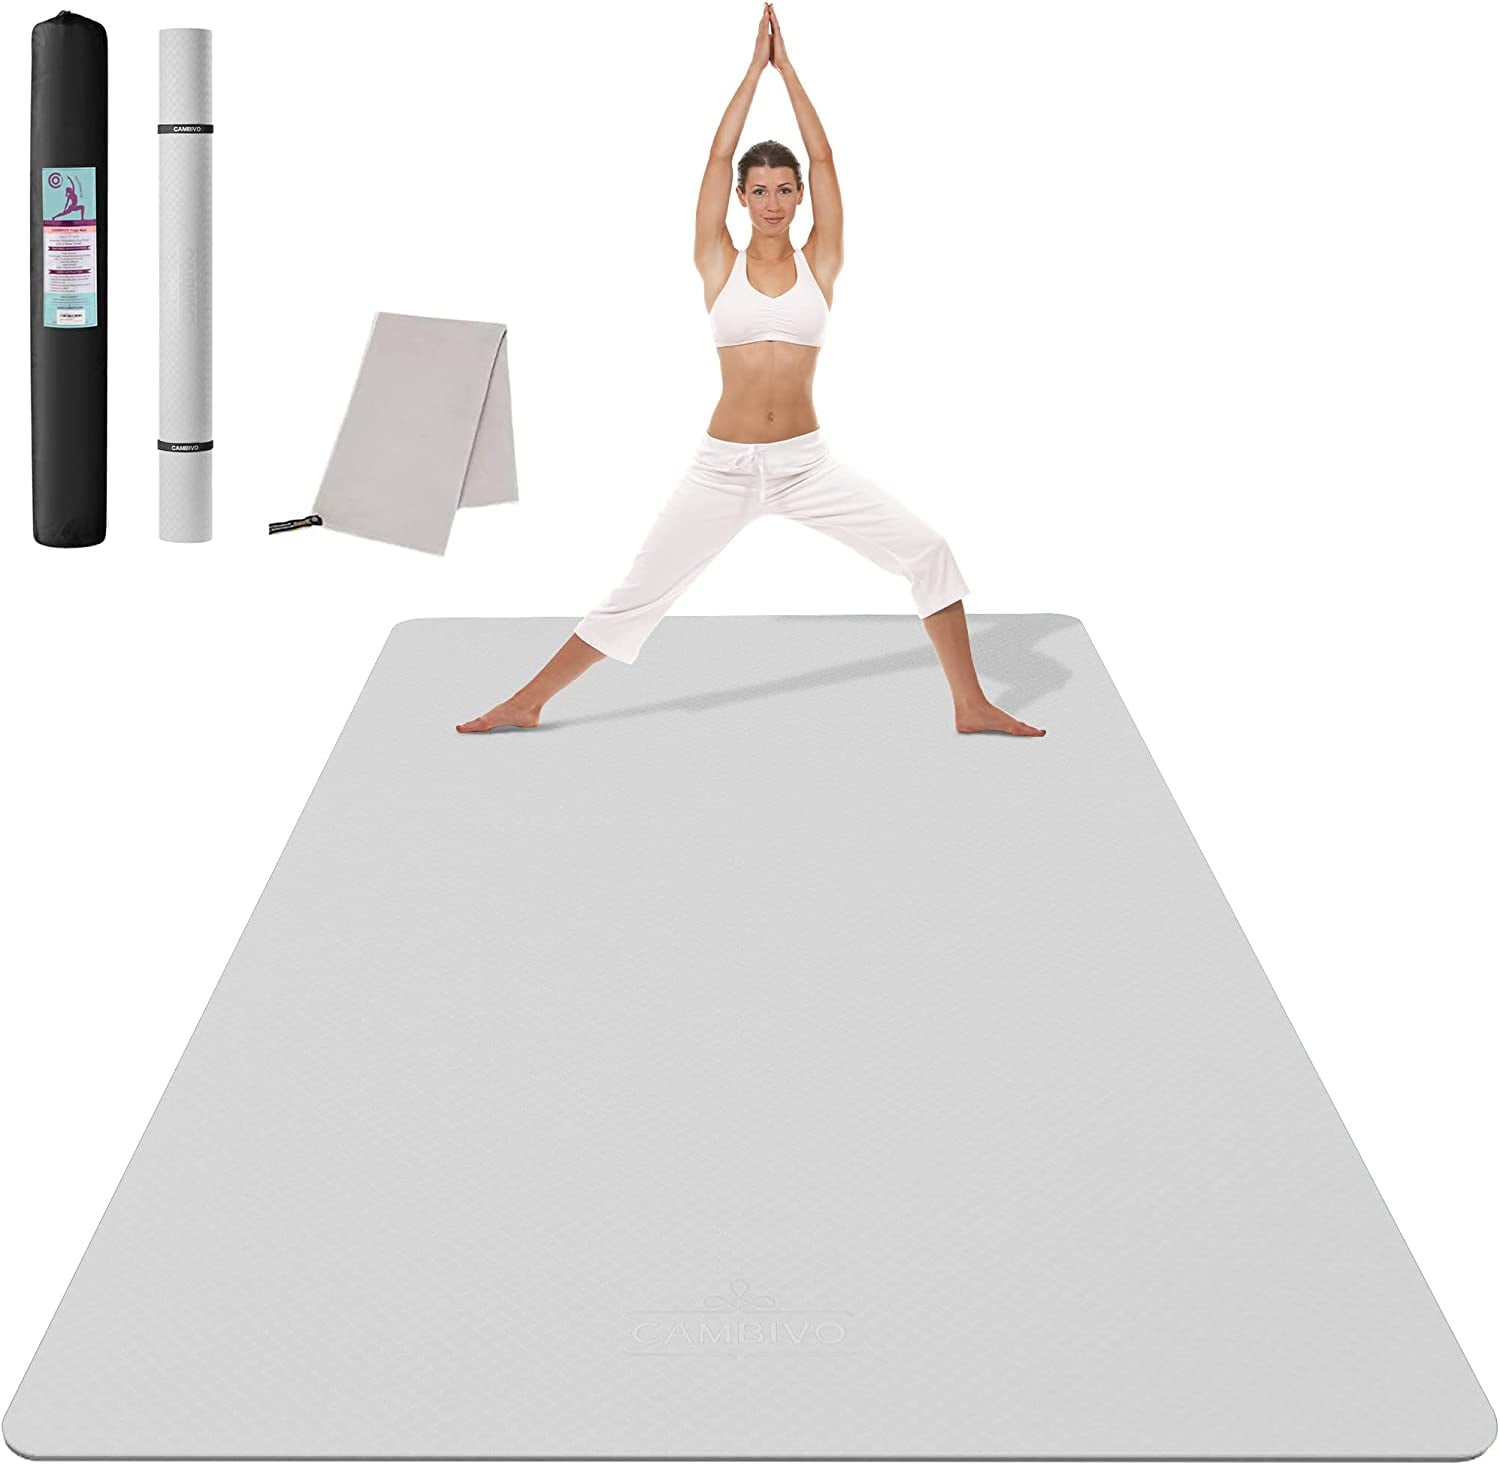 Adidas Hot Yoga Mat – Workout For Less